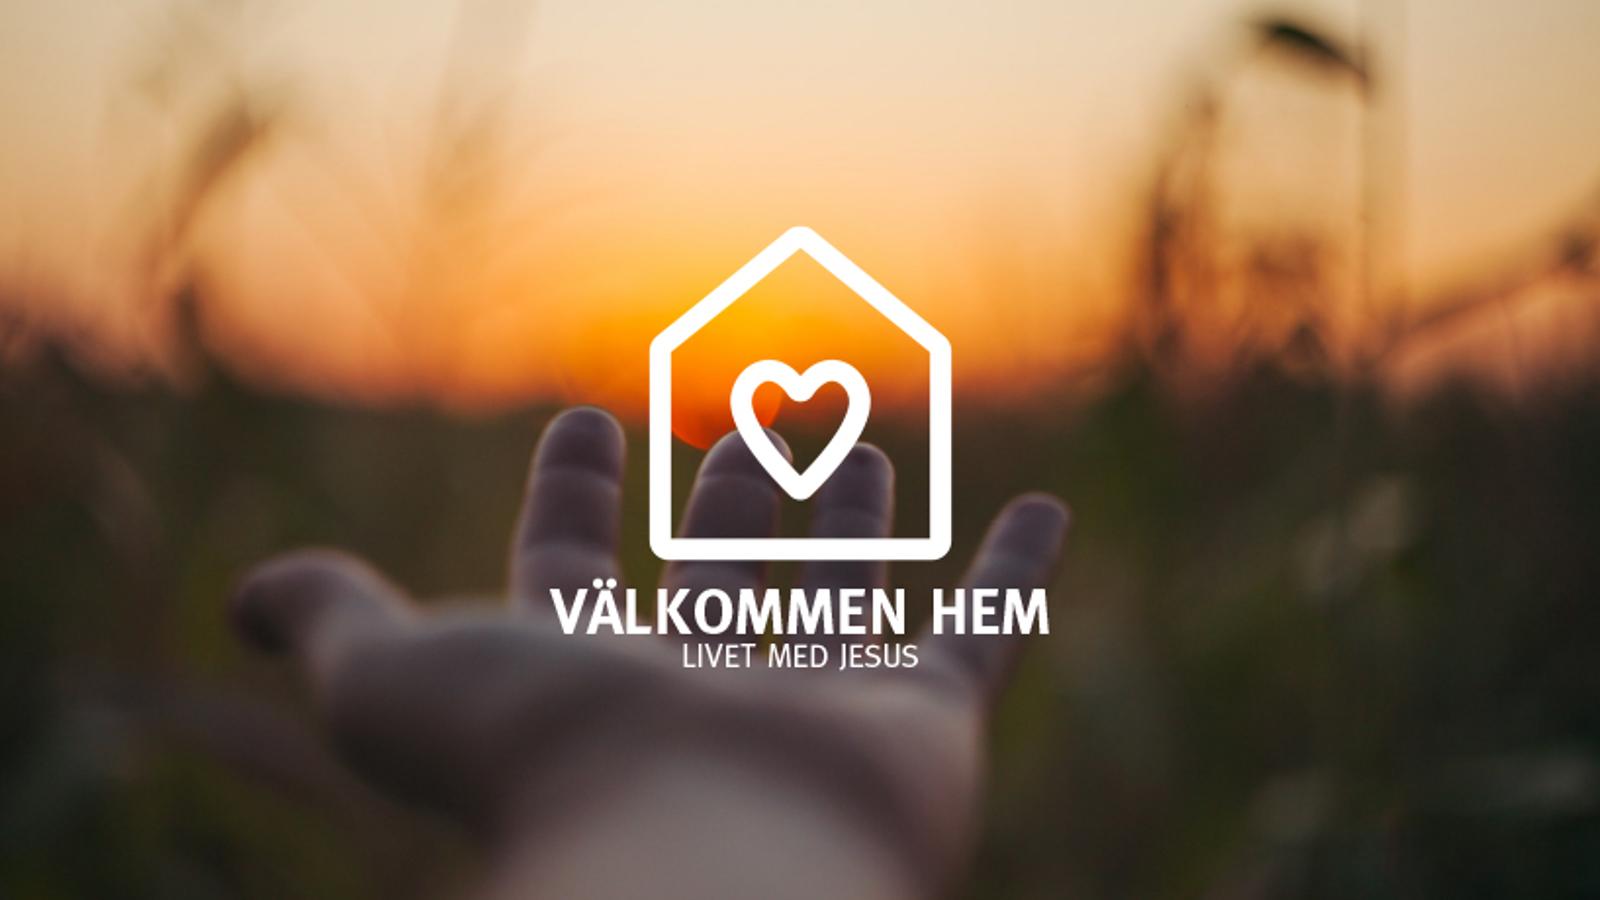 En logotyp i form av ett hus med ett hjärta på, med texten "Välkommen hem. Livet med Jesus". I bakgrunden sträcker sig en hand mot en solnedgång.